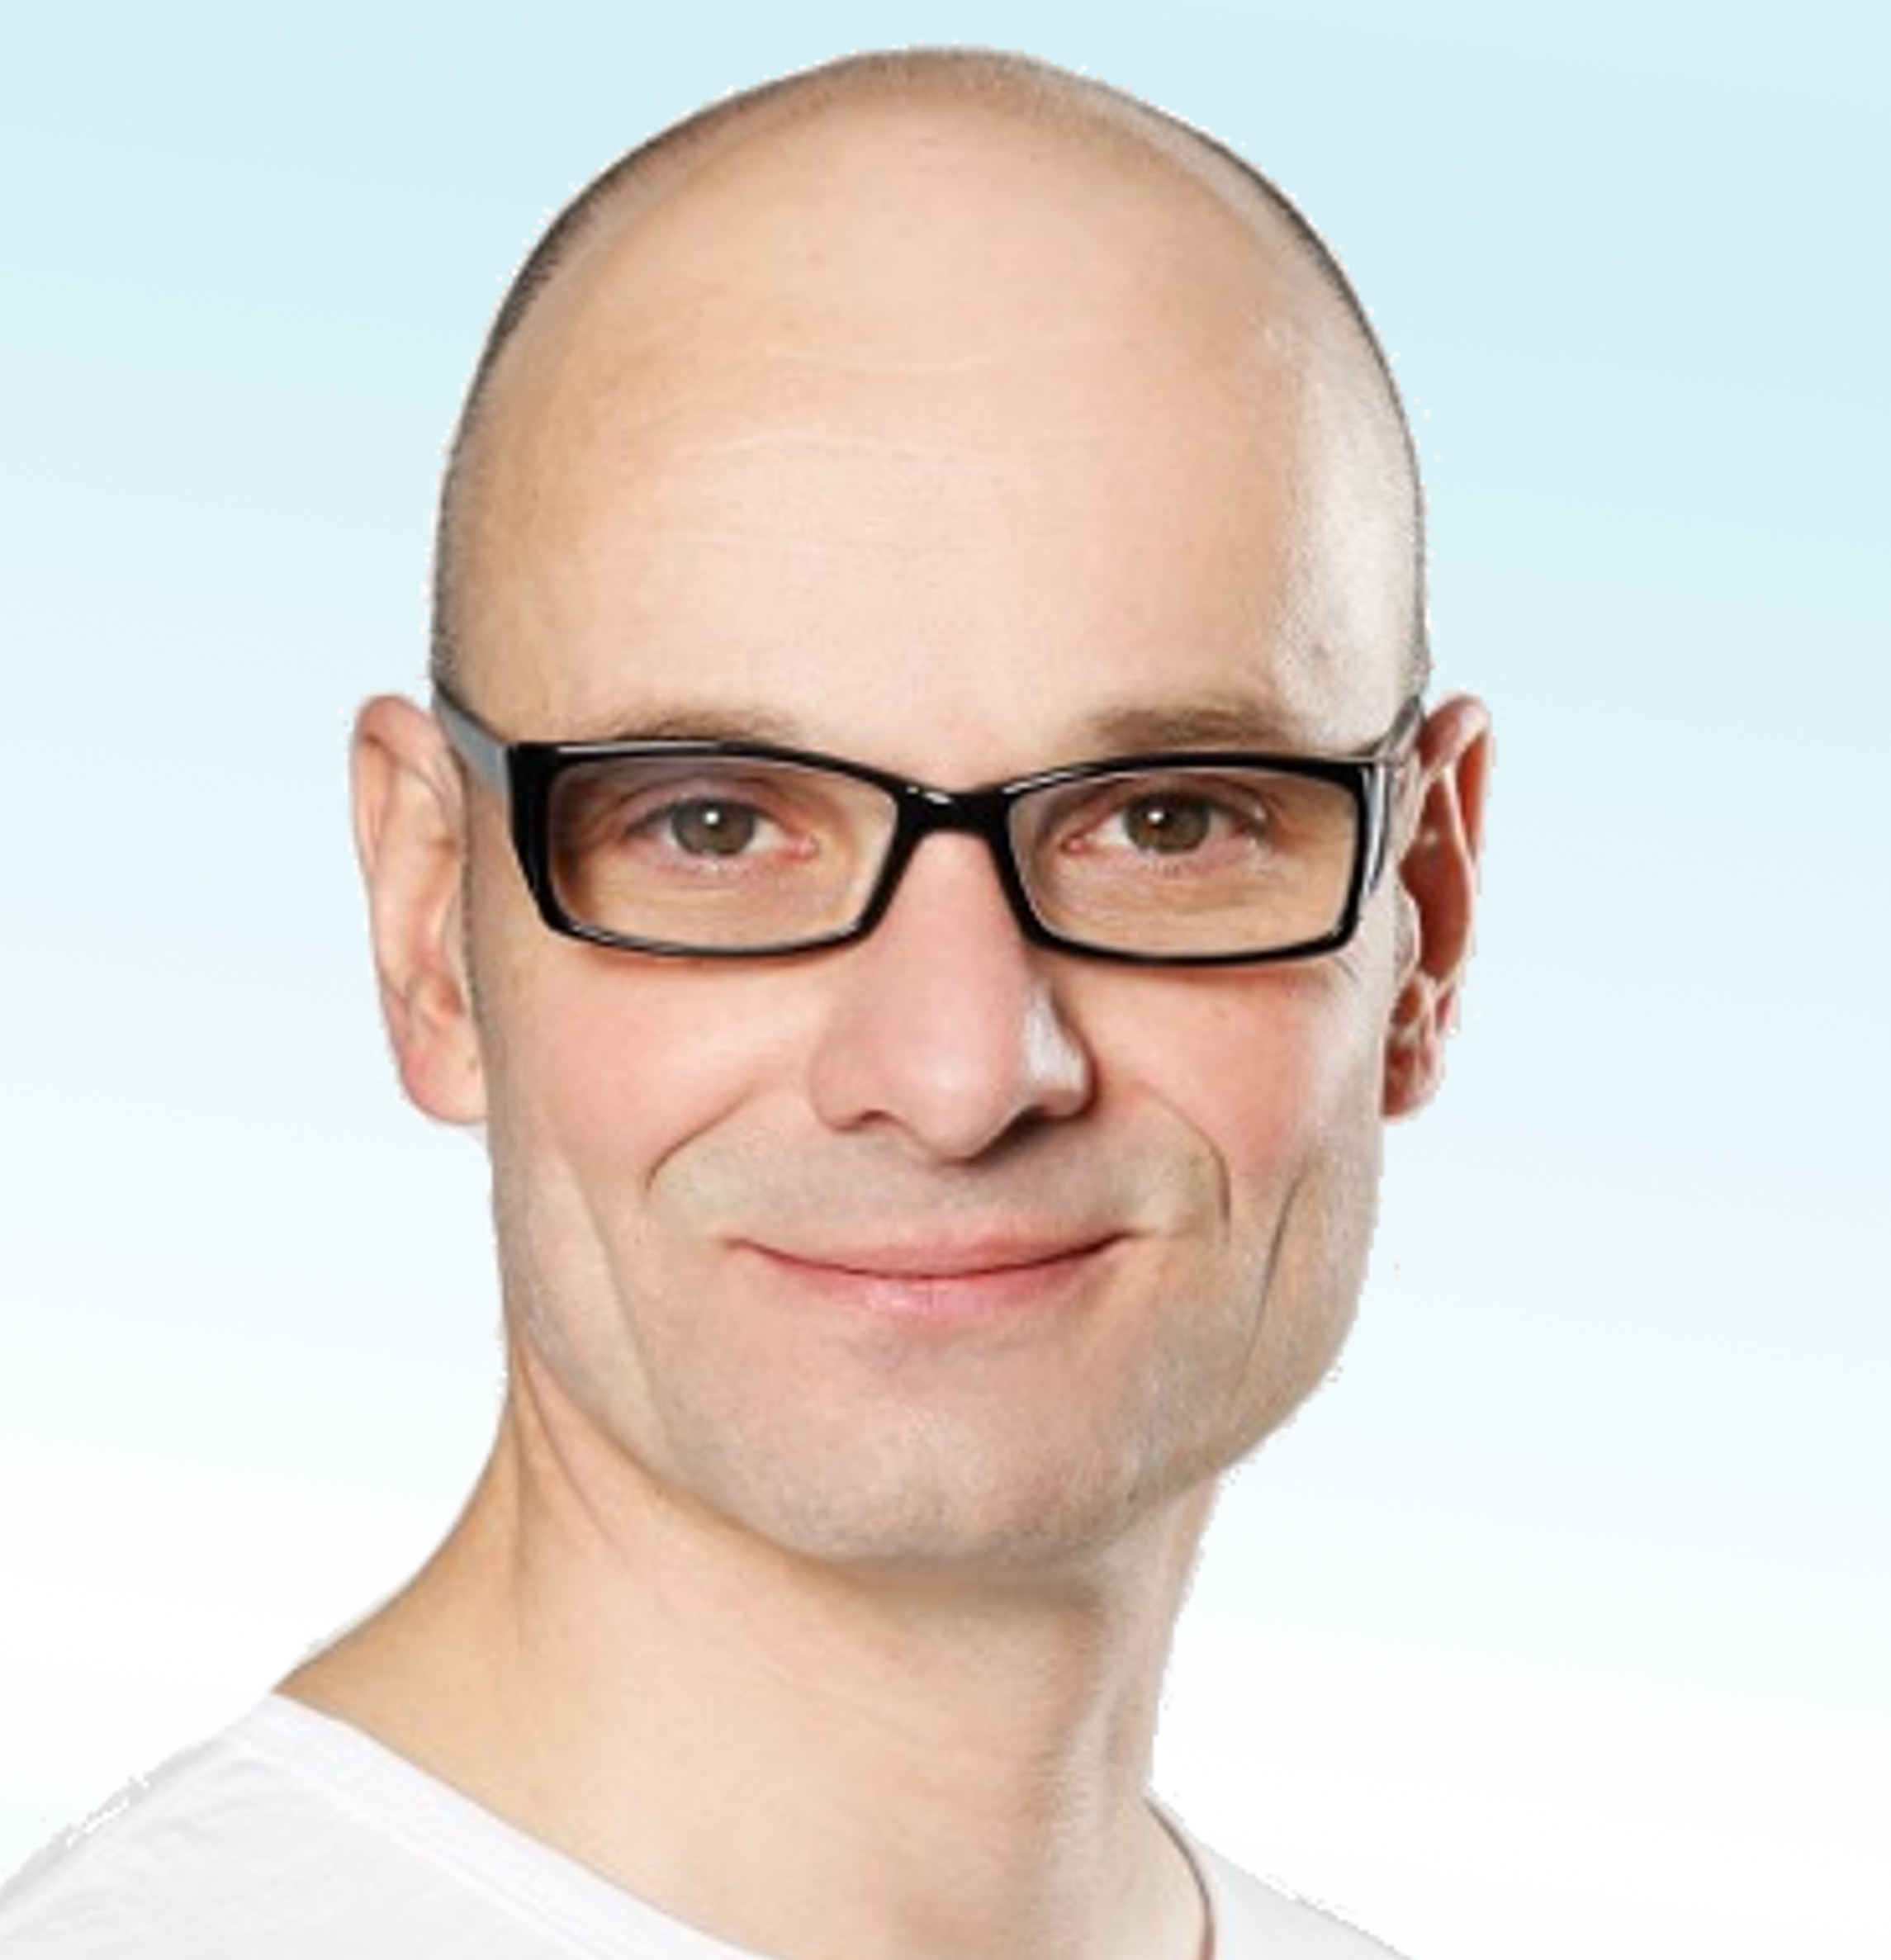 Dermatologist, Dr. med. univ. Stefan Teske